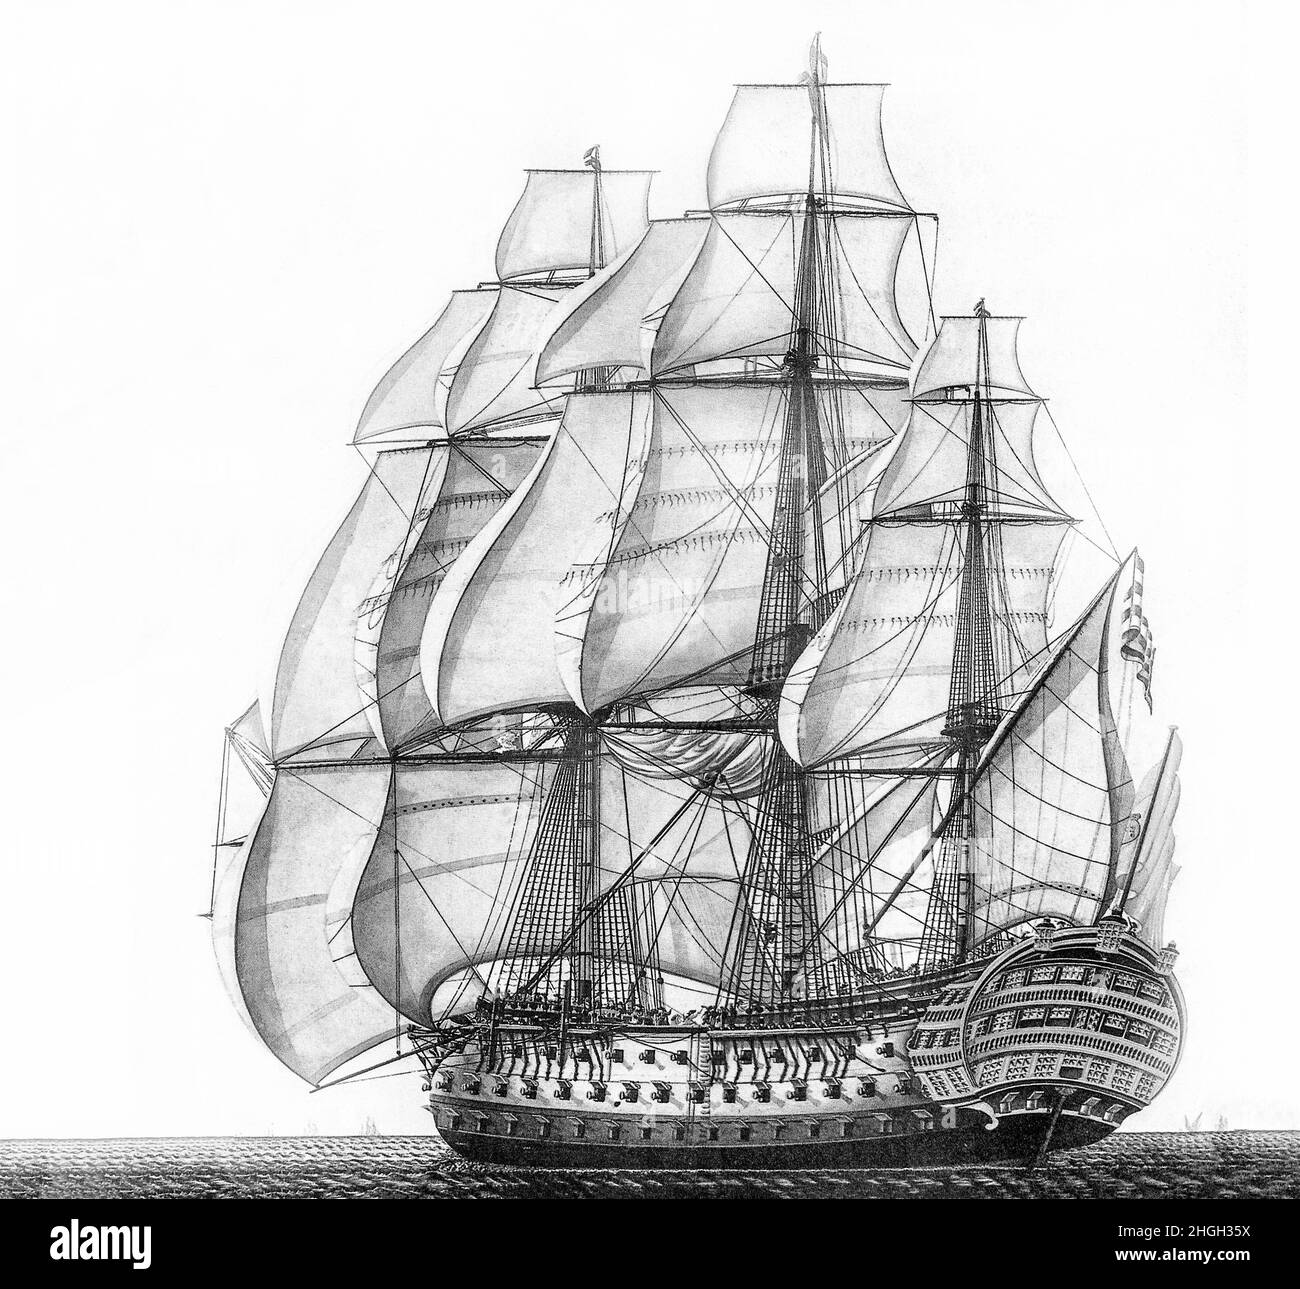 Une illustration monochrome du navire espagnol 'Dantísima Trinidad', un navire espagnol de premier ordre de la ligne avec 112 canons.Ce nombre a été porté à 140 canons autour de 1802, créant ainsi ce qui était en fait un quatrième pont-canon continu bien que les canons supplémentaires ajoutés étaient en fait relativement petits.Lors de sa reconstruction, elle était le navire armé le plus lourd au monde et portait le plus d'armes de n'importe quel navire de la ligne surmonté à l'âge de Sail. Elle a participé à la bataille de Trafalgar le 21 octobre 1805, dans le cadre de la flotte franco-espagnole combinée. Banque D'Images